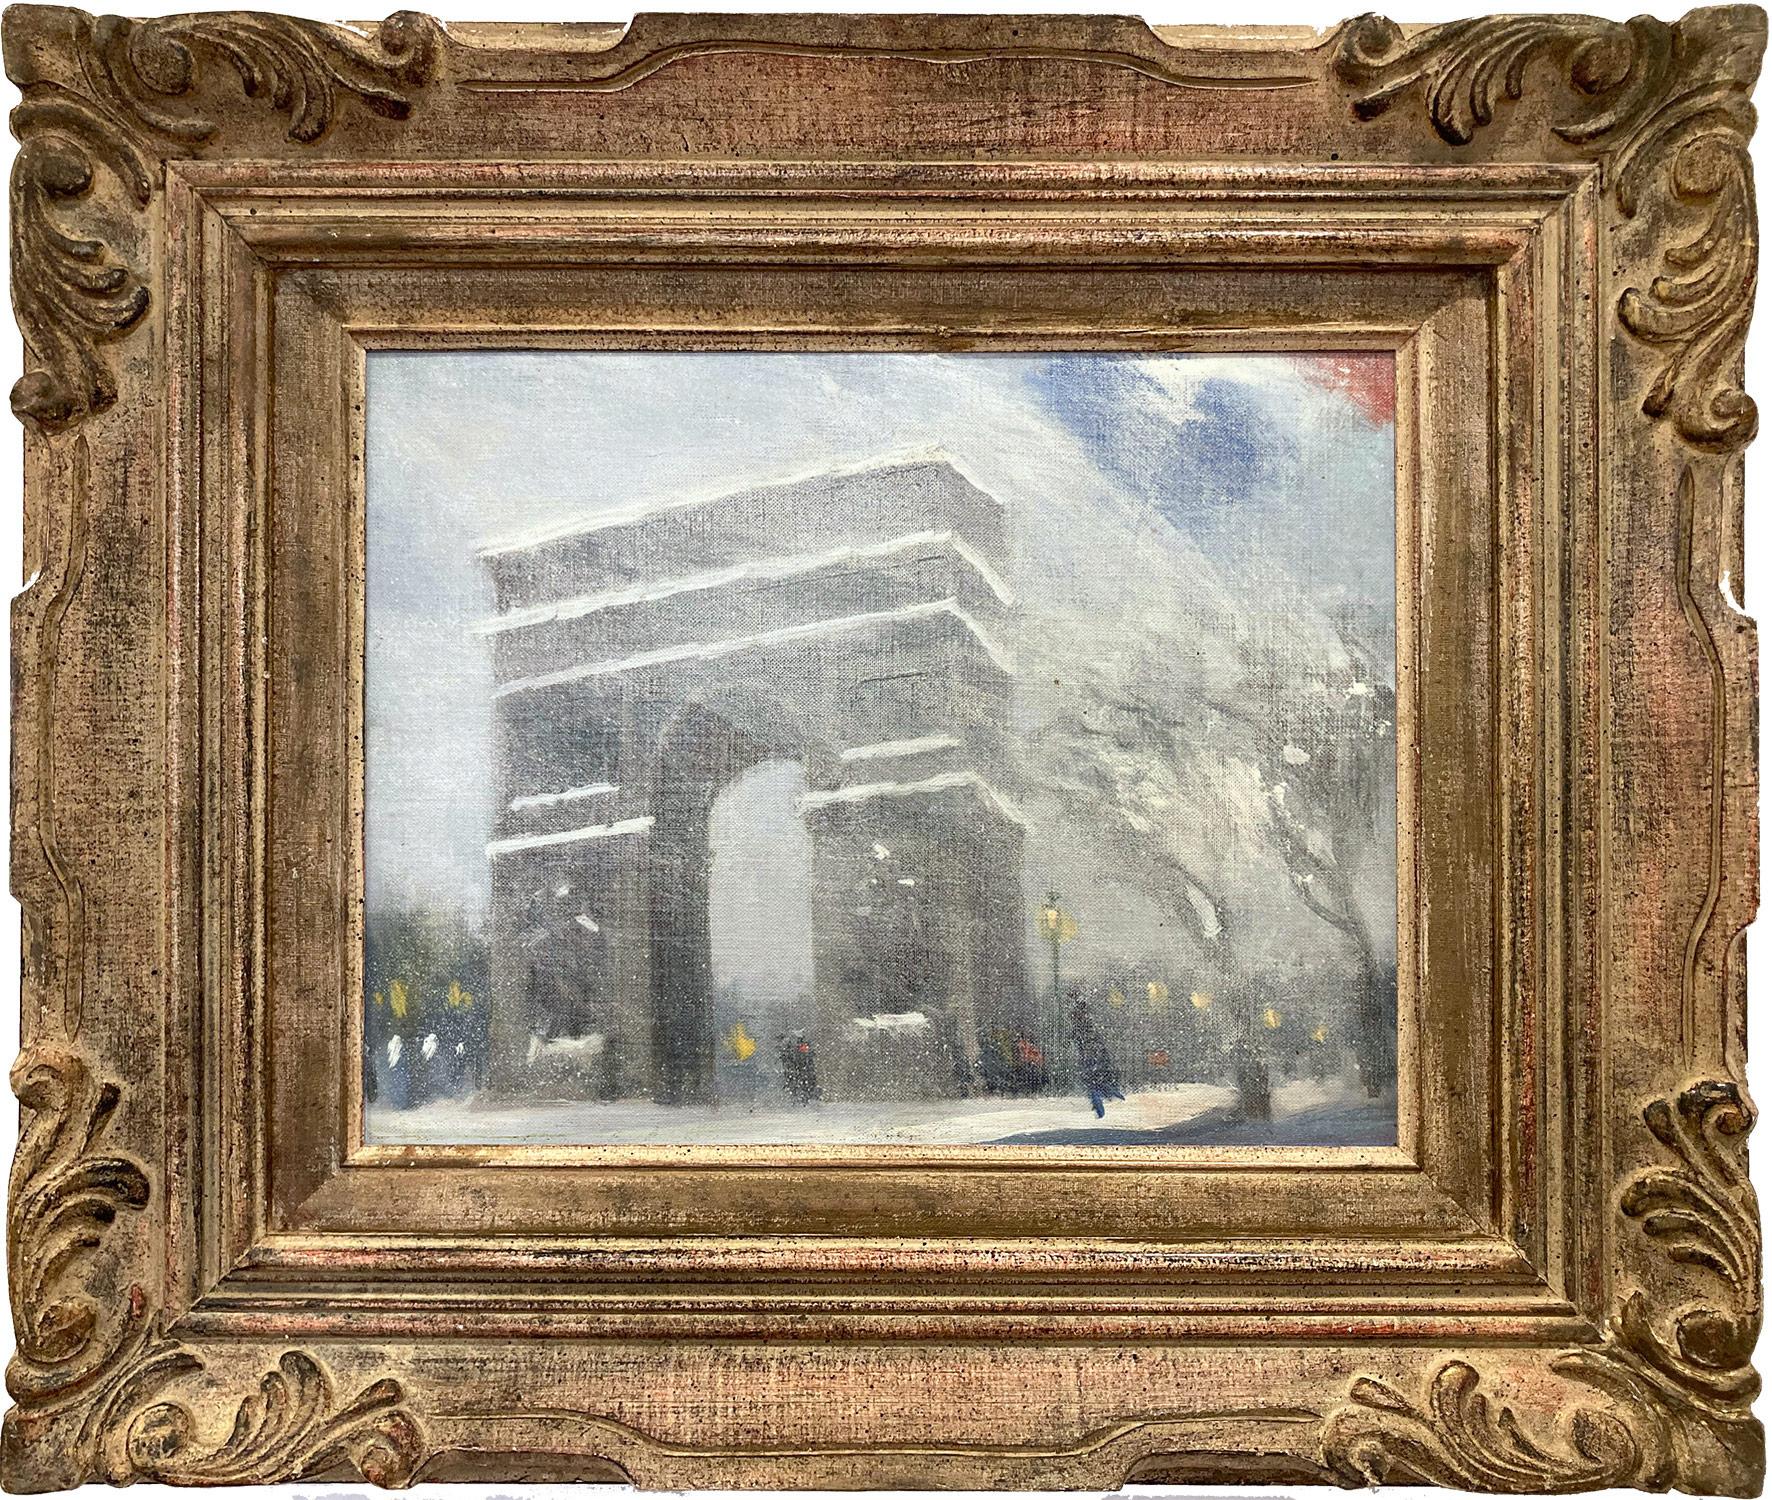 Figurative Painting Unknown - Peinture impressionniste « Snow at Washington Square Park » (Neige à Washington Square Park) de Johann Berthelsen